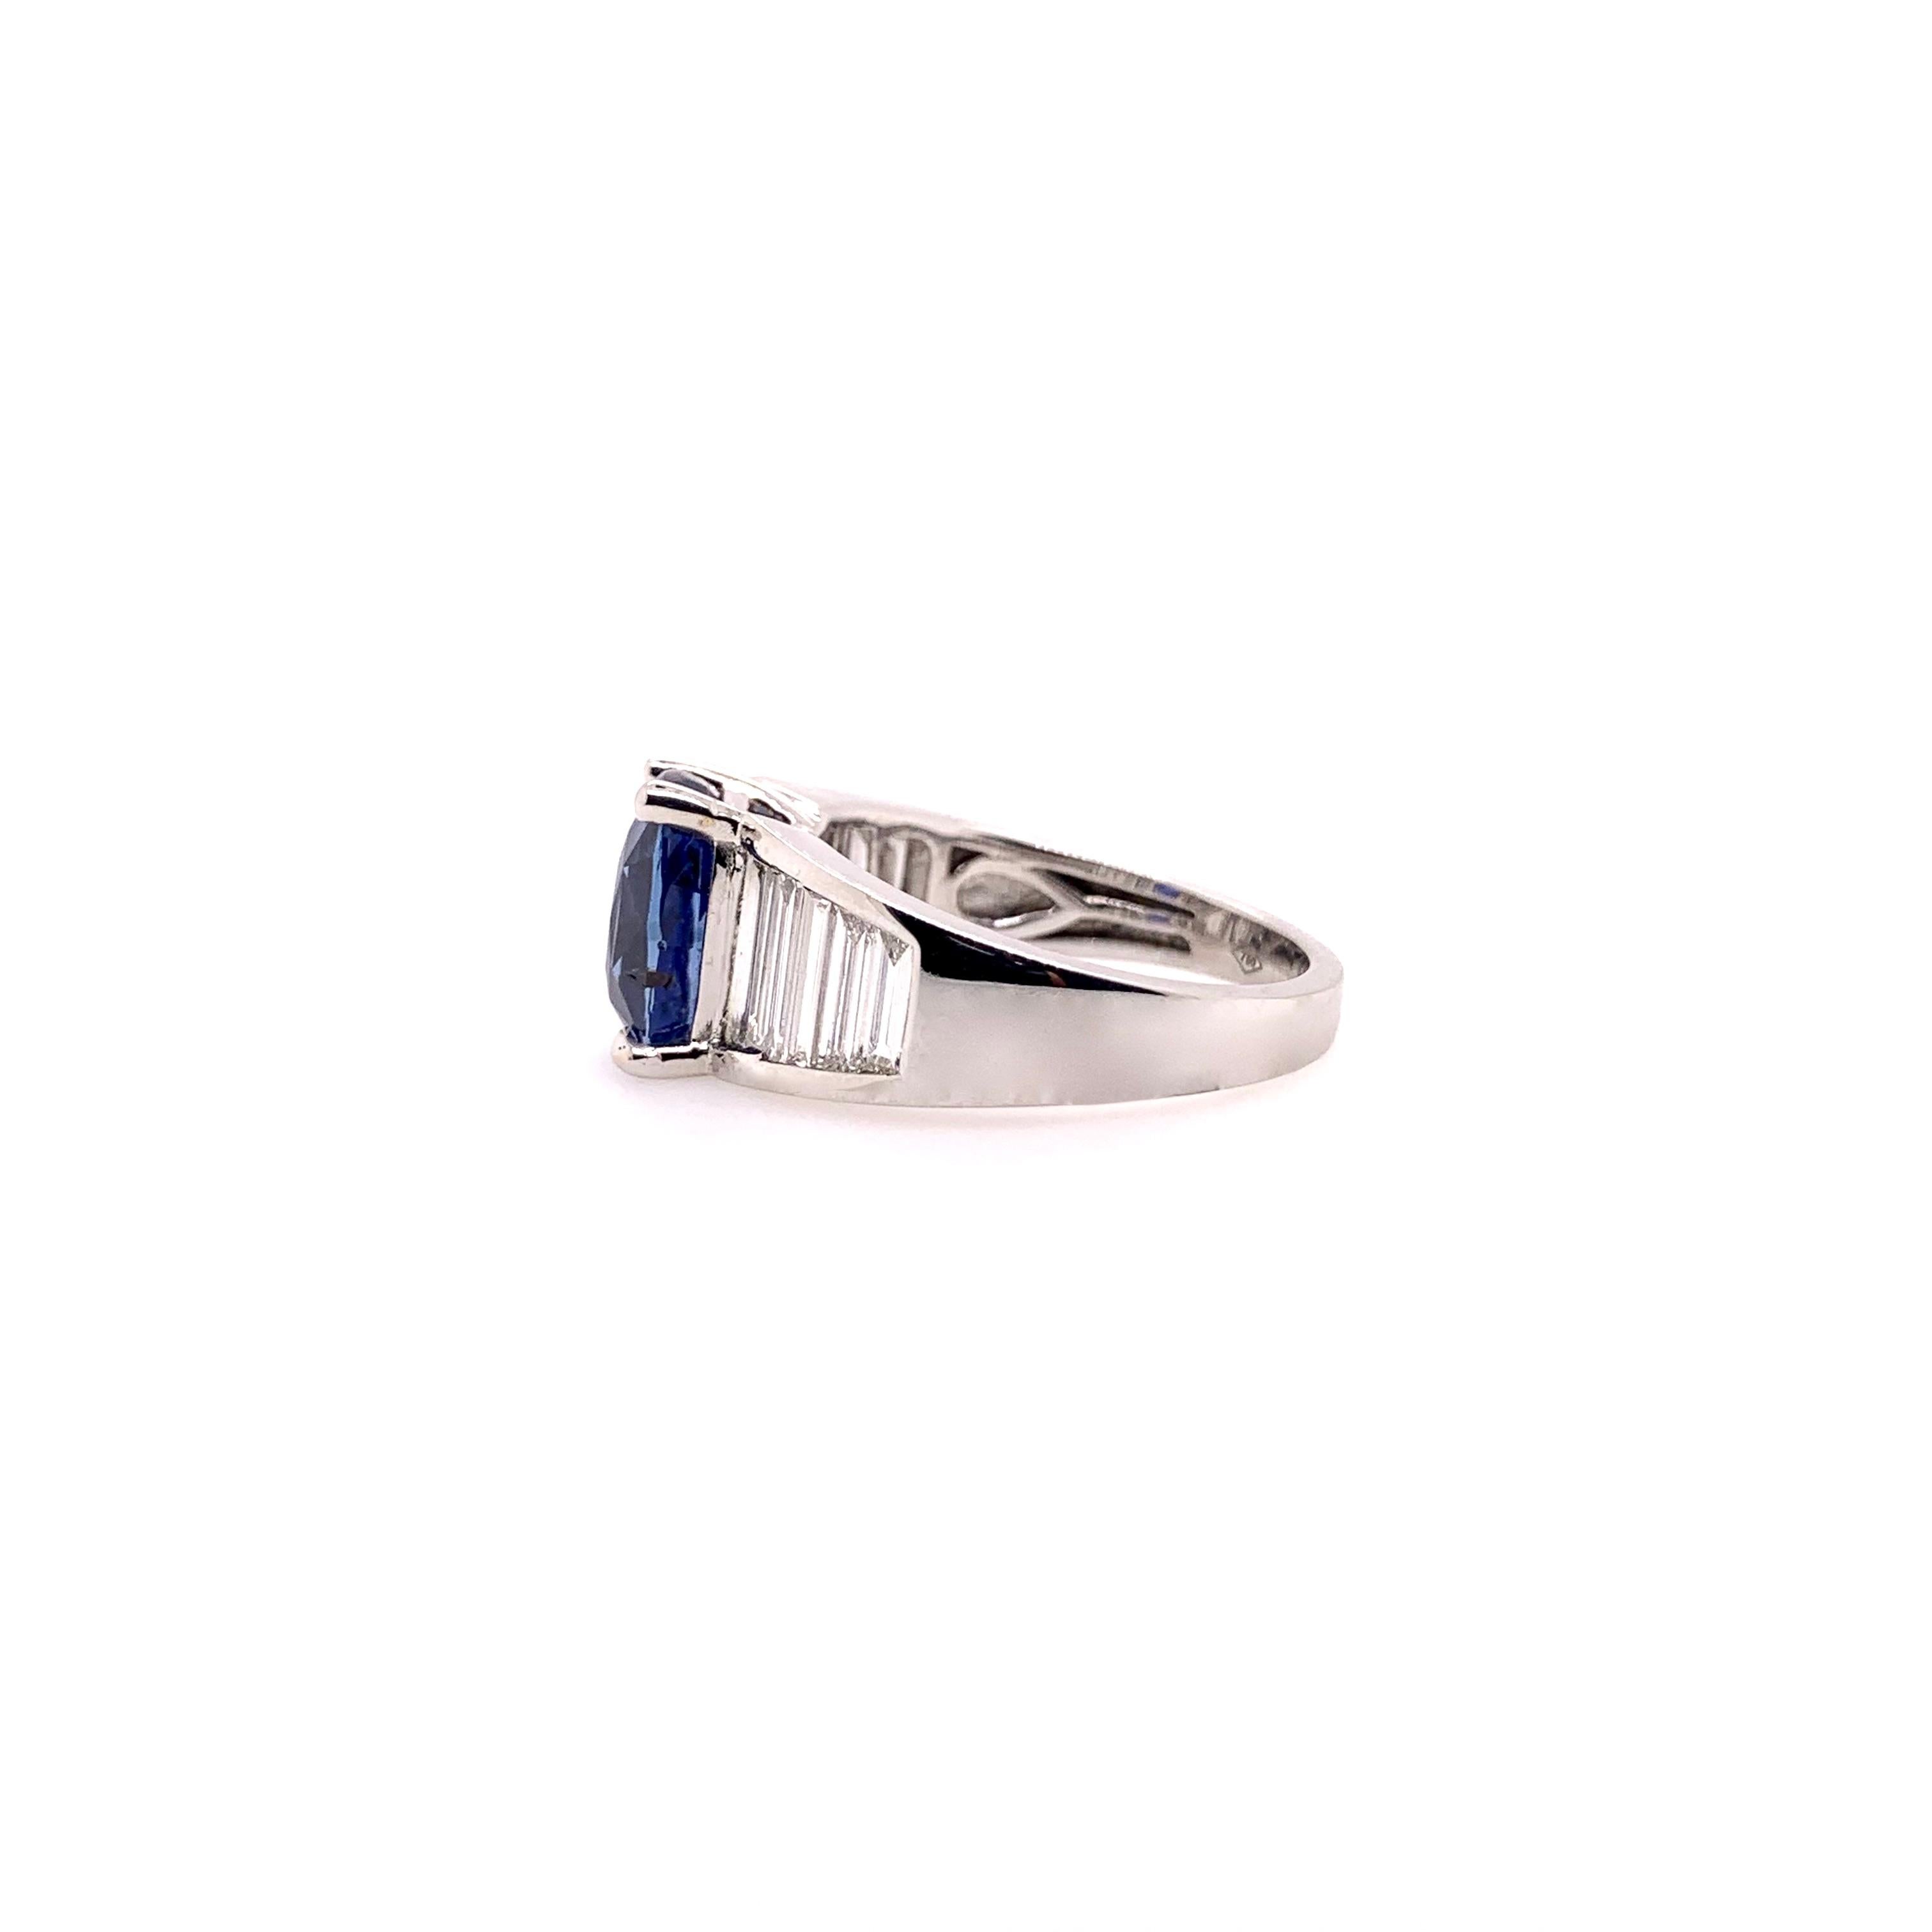 Une rare bague en saphir bleu non chauffé, certifié par le GIA, sertie d'un diamant baguette allongé classique en or blanc 18k.  Le saphir de couleur bleu royal de 4,06 ct. attire l'attention et est accentué par les baguettes en diamant de 0,99 ct.